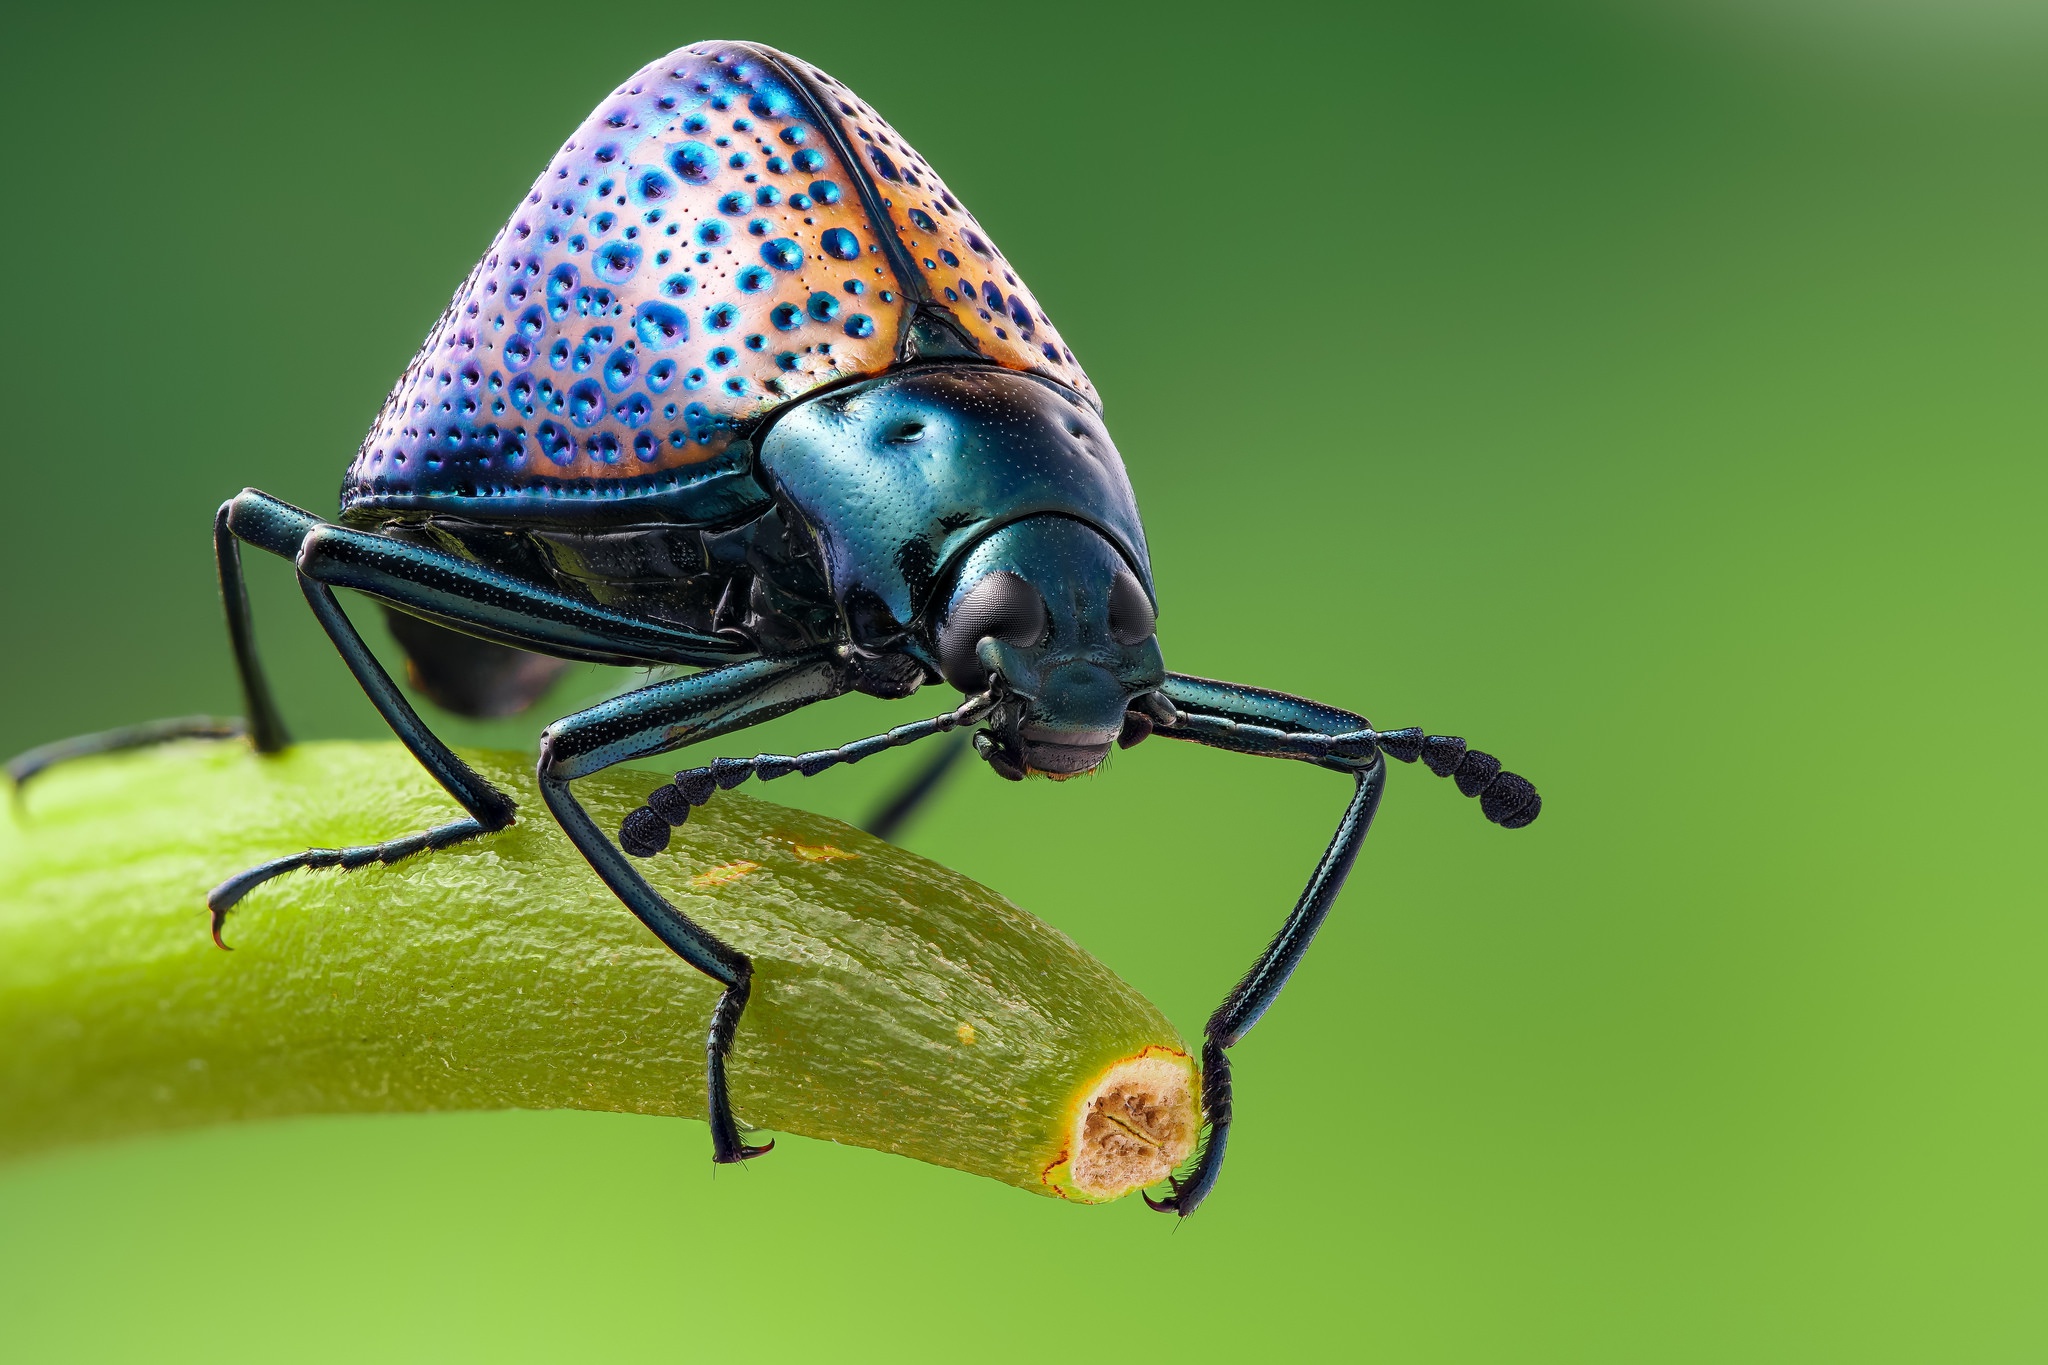 Descarga gratuita de fondo de pantalla para móvil de Animales, Insecto, Escarabajo, Macrofotografía.